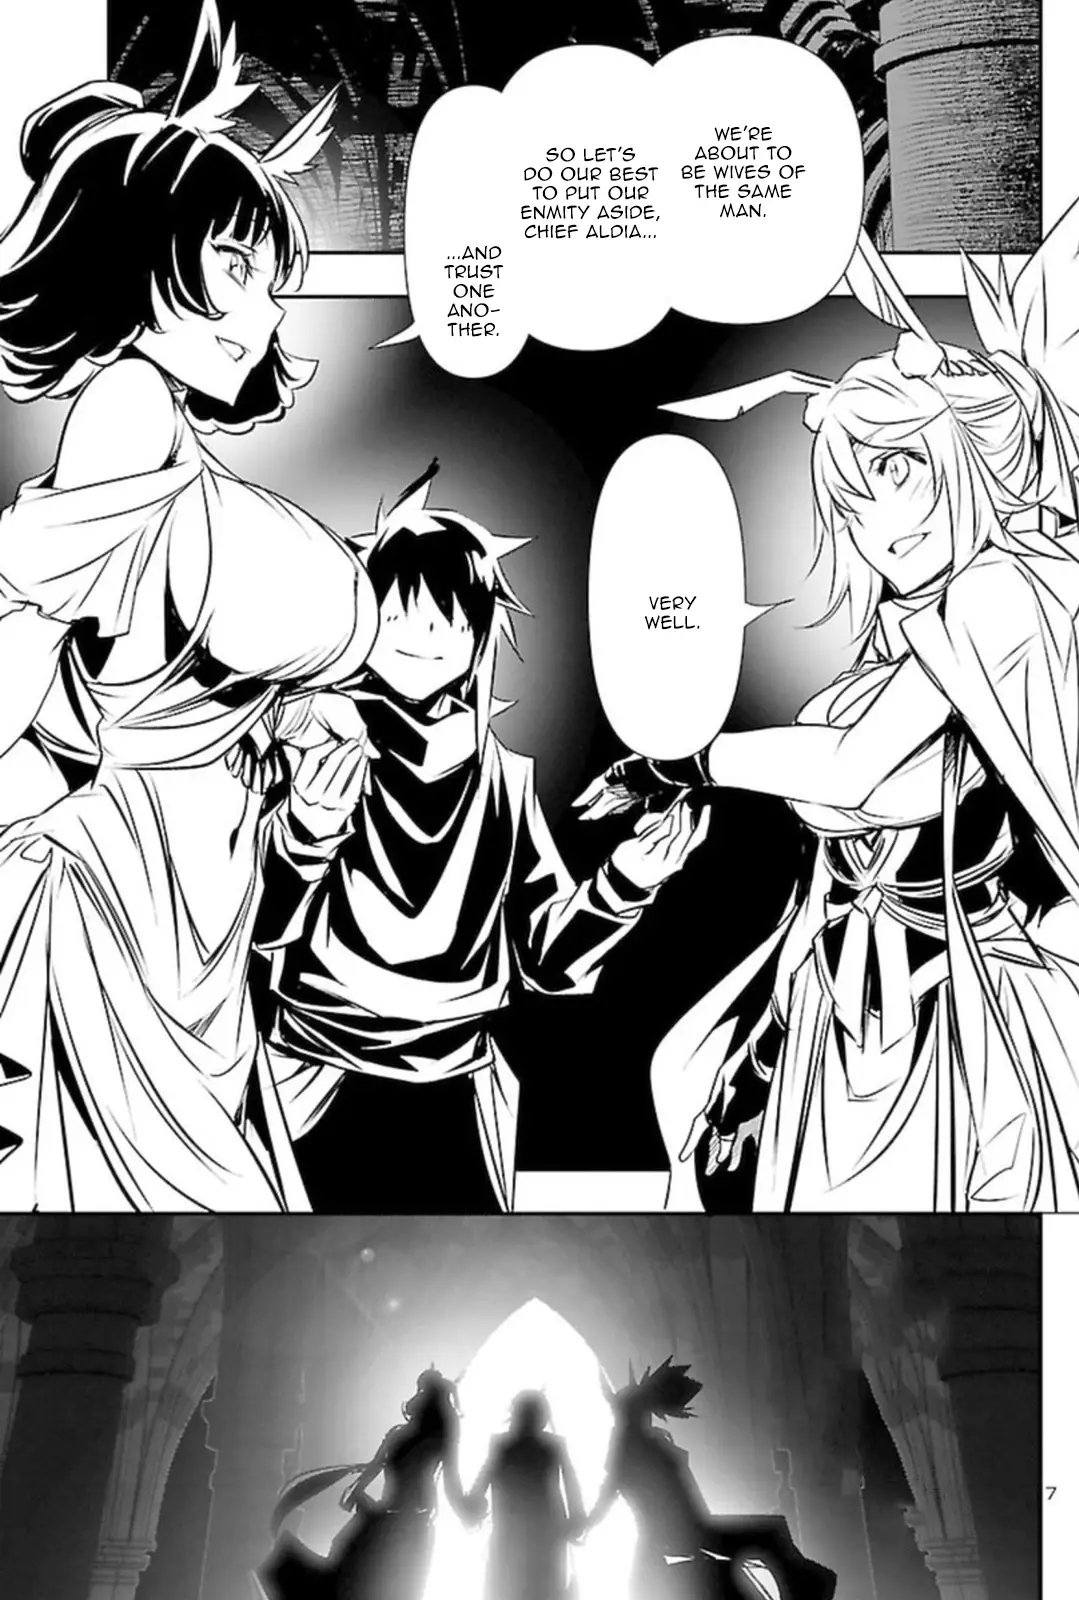 Shinju no Nectar - 68 page 7-40373cd3